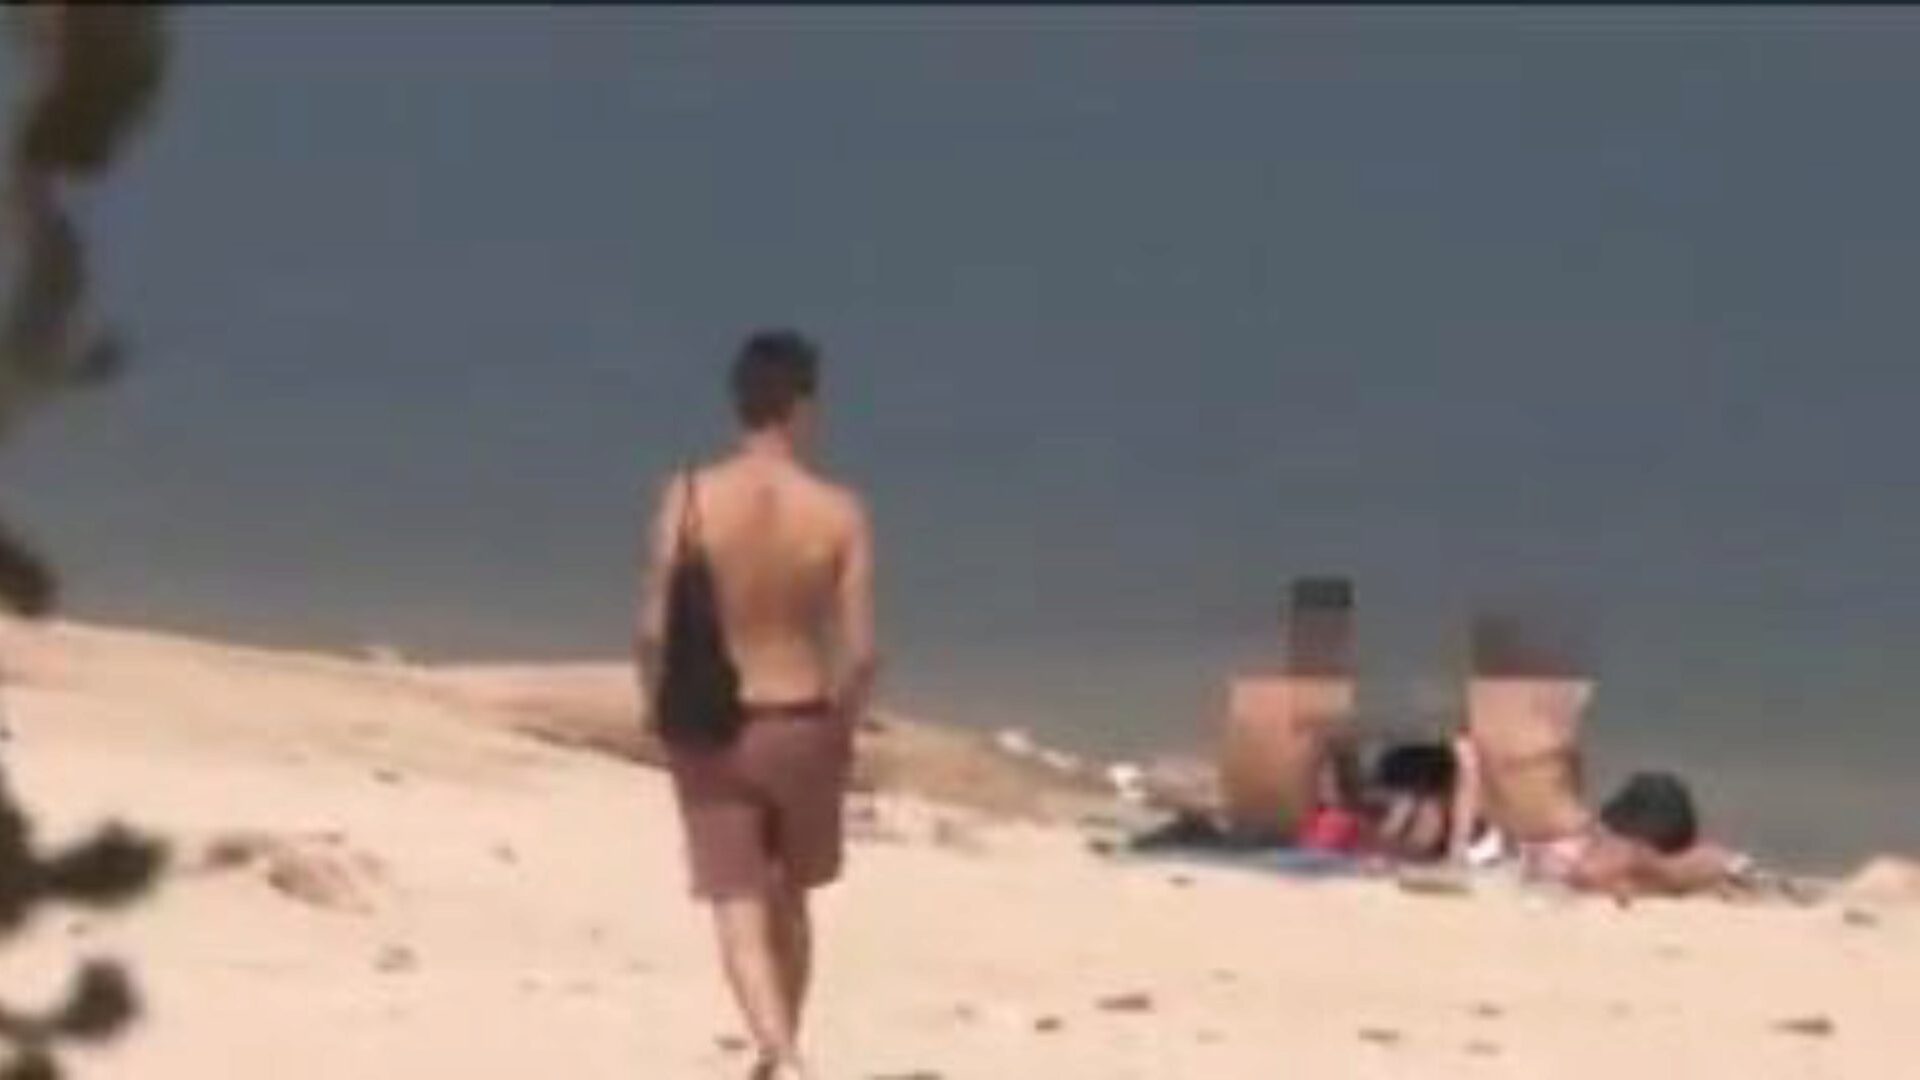 ένας άγνωστος πέφτει για το μεγάλο 10 λίβρες του jotade στην παραλία γυμνιστών, το jotade μας αποδεικνύει πώς αυτός ο τύπος μπορεί να πάρει οποιοδήποτε κορίτσι και αυτός ο τύπος το κάνει απλά βγαίνοντας γυμνοί στο δάσος